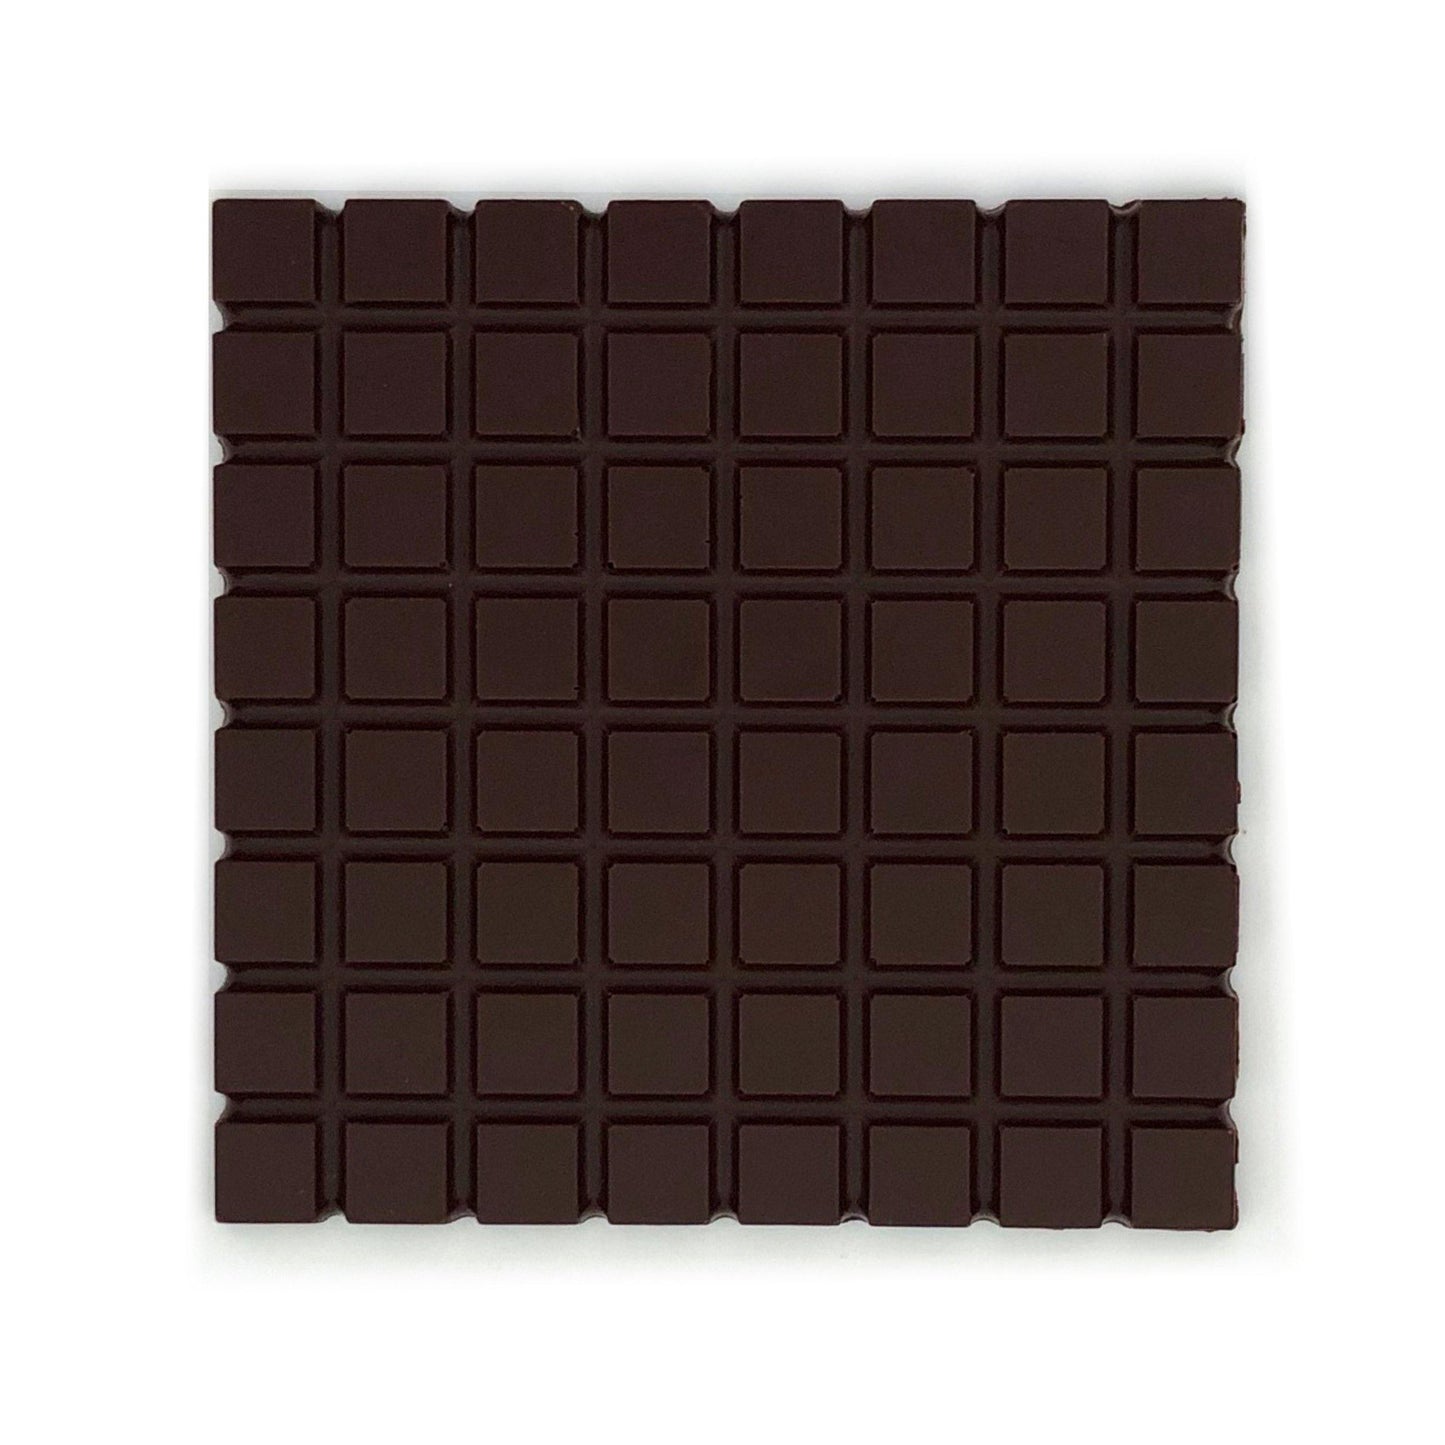 70% Cocoa Brazil & Peanuts - Nibble Chocolate